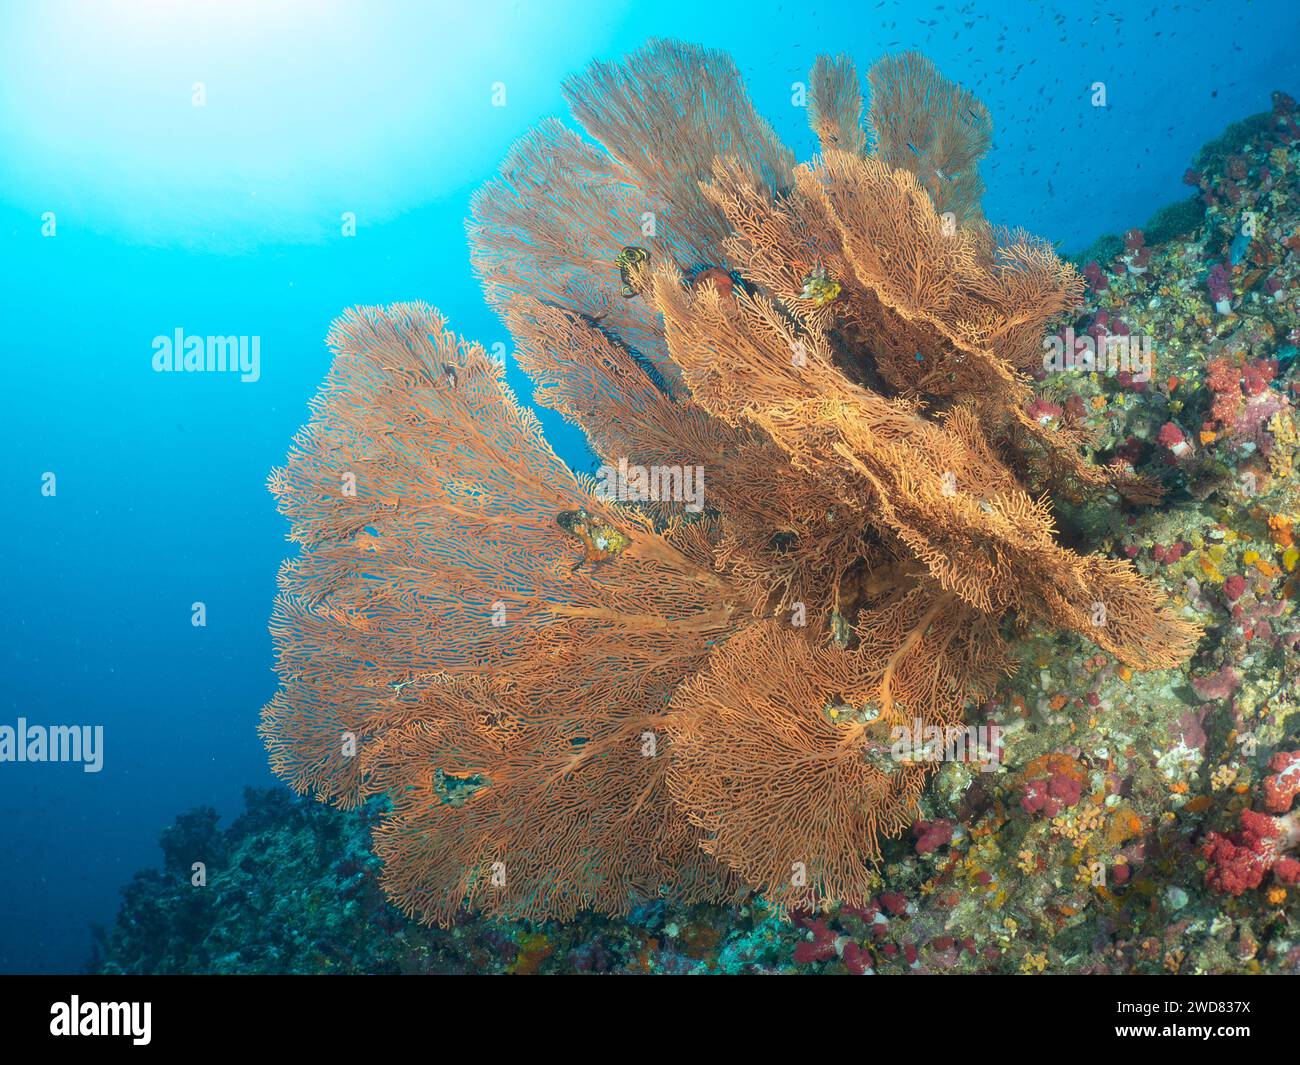 Riesen Gorgonisches Meer Fan Soft Coral. Verzweigte Gorgonia-Korallen. Wirbellose Meerestiere Alcyonacea, Cnidaria Octocorals. Coral Reef Life Undersea. Stockfoto